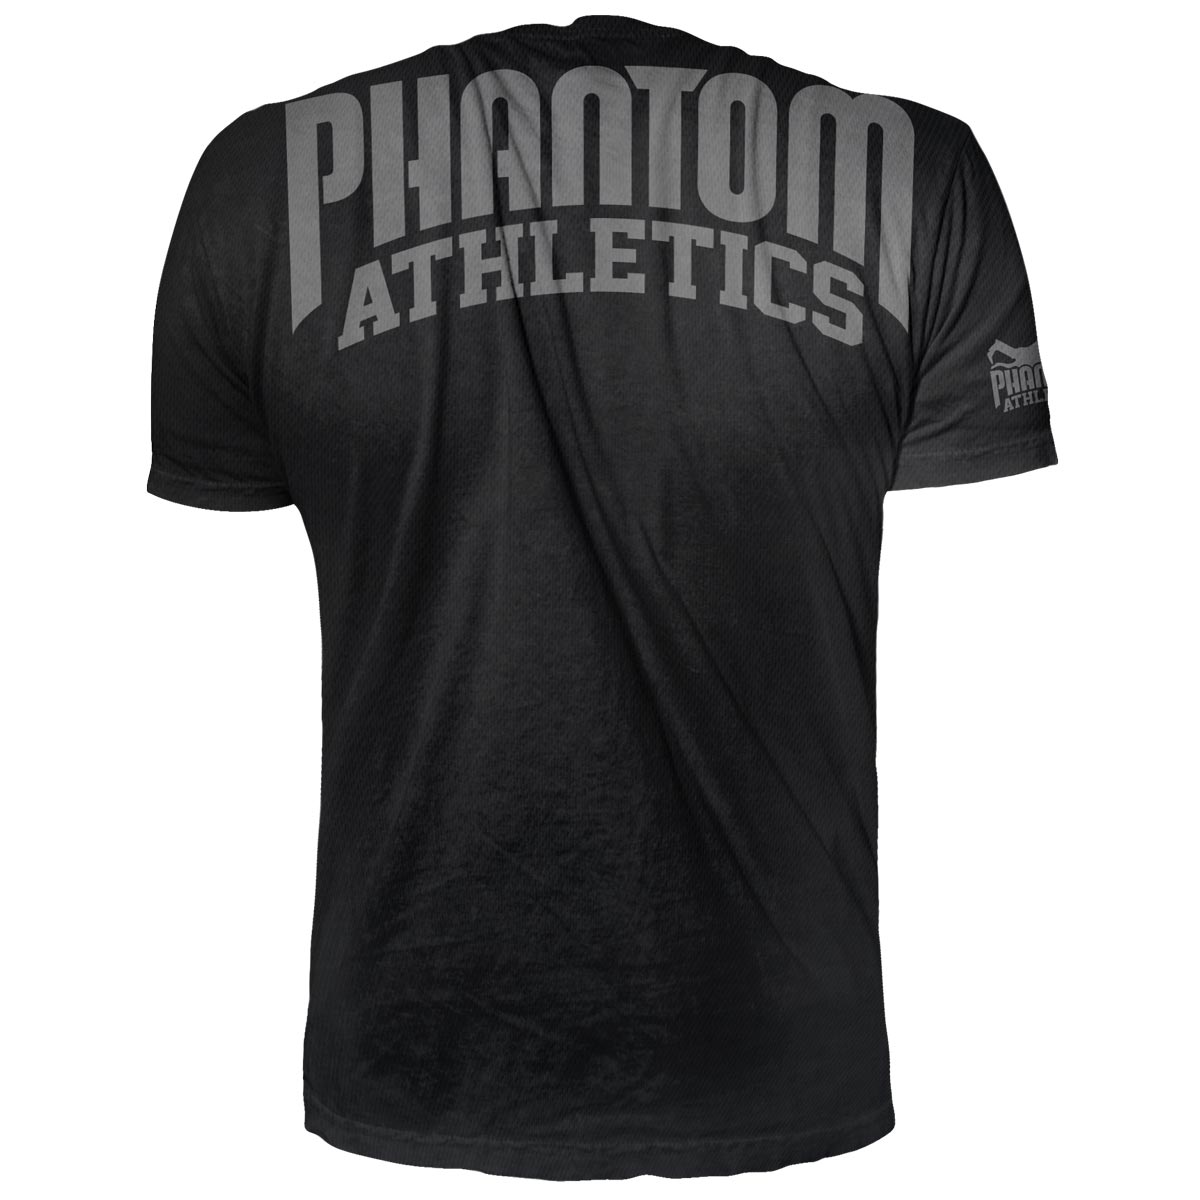 Das Phantom EVO Supporter Trainingsshirt für deinen Kampfsport. Atmungsaktiv und funktional. Ideal für MMA, BJJ oder Muay Thai. 